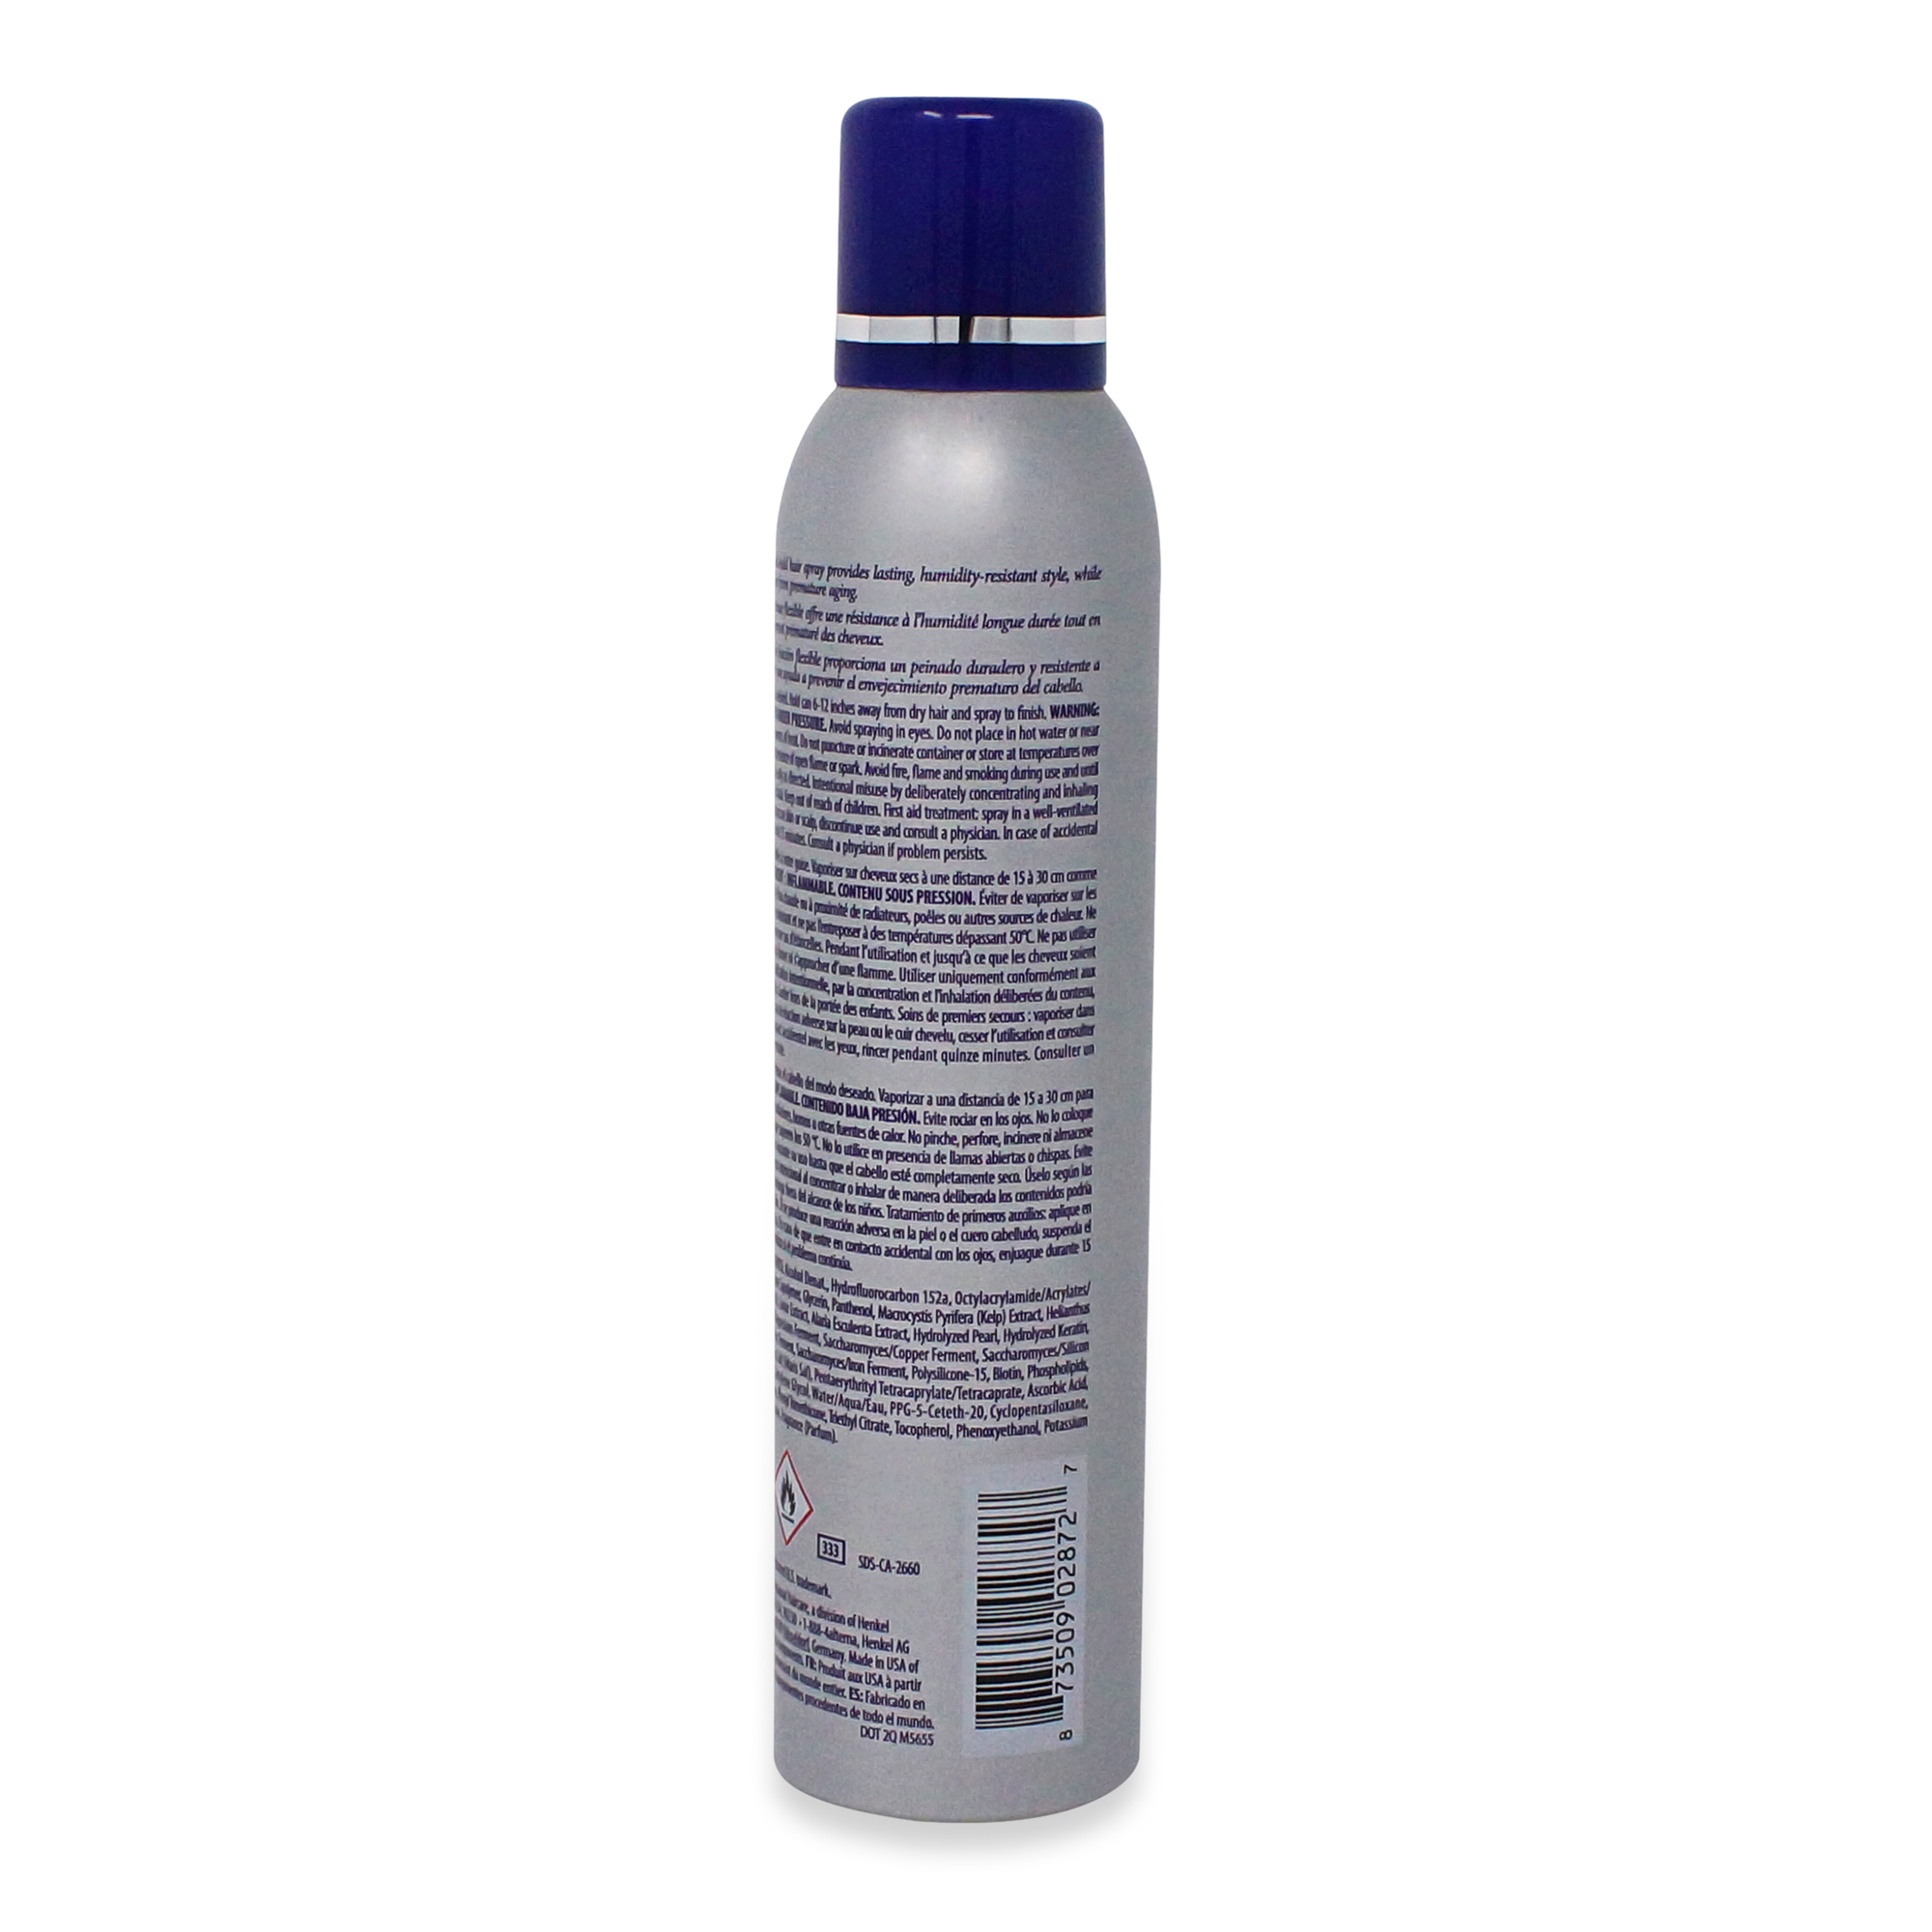 Alterna Caviar Anti-Aging Working Hair Spray, 7.4 oz. - image 2 of 3